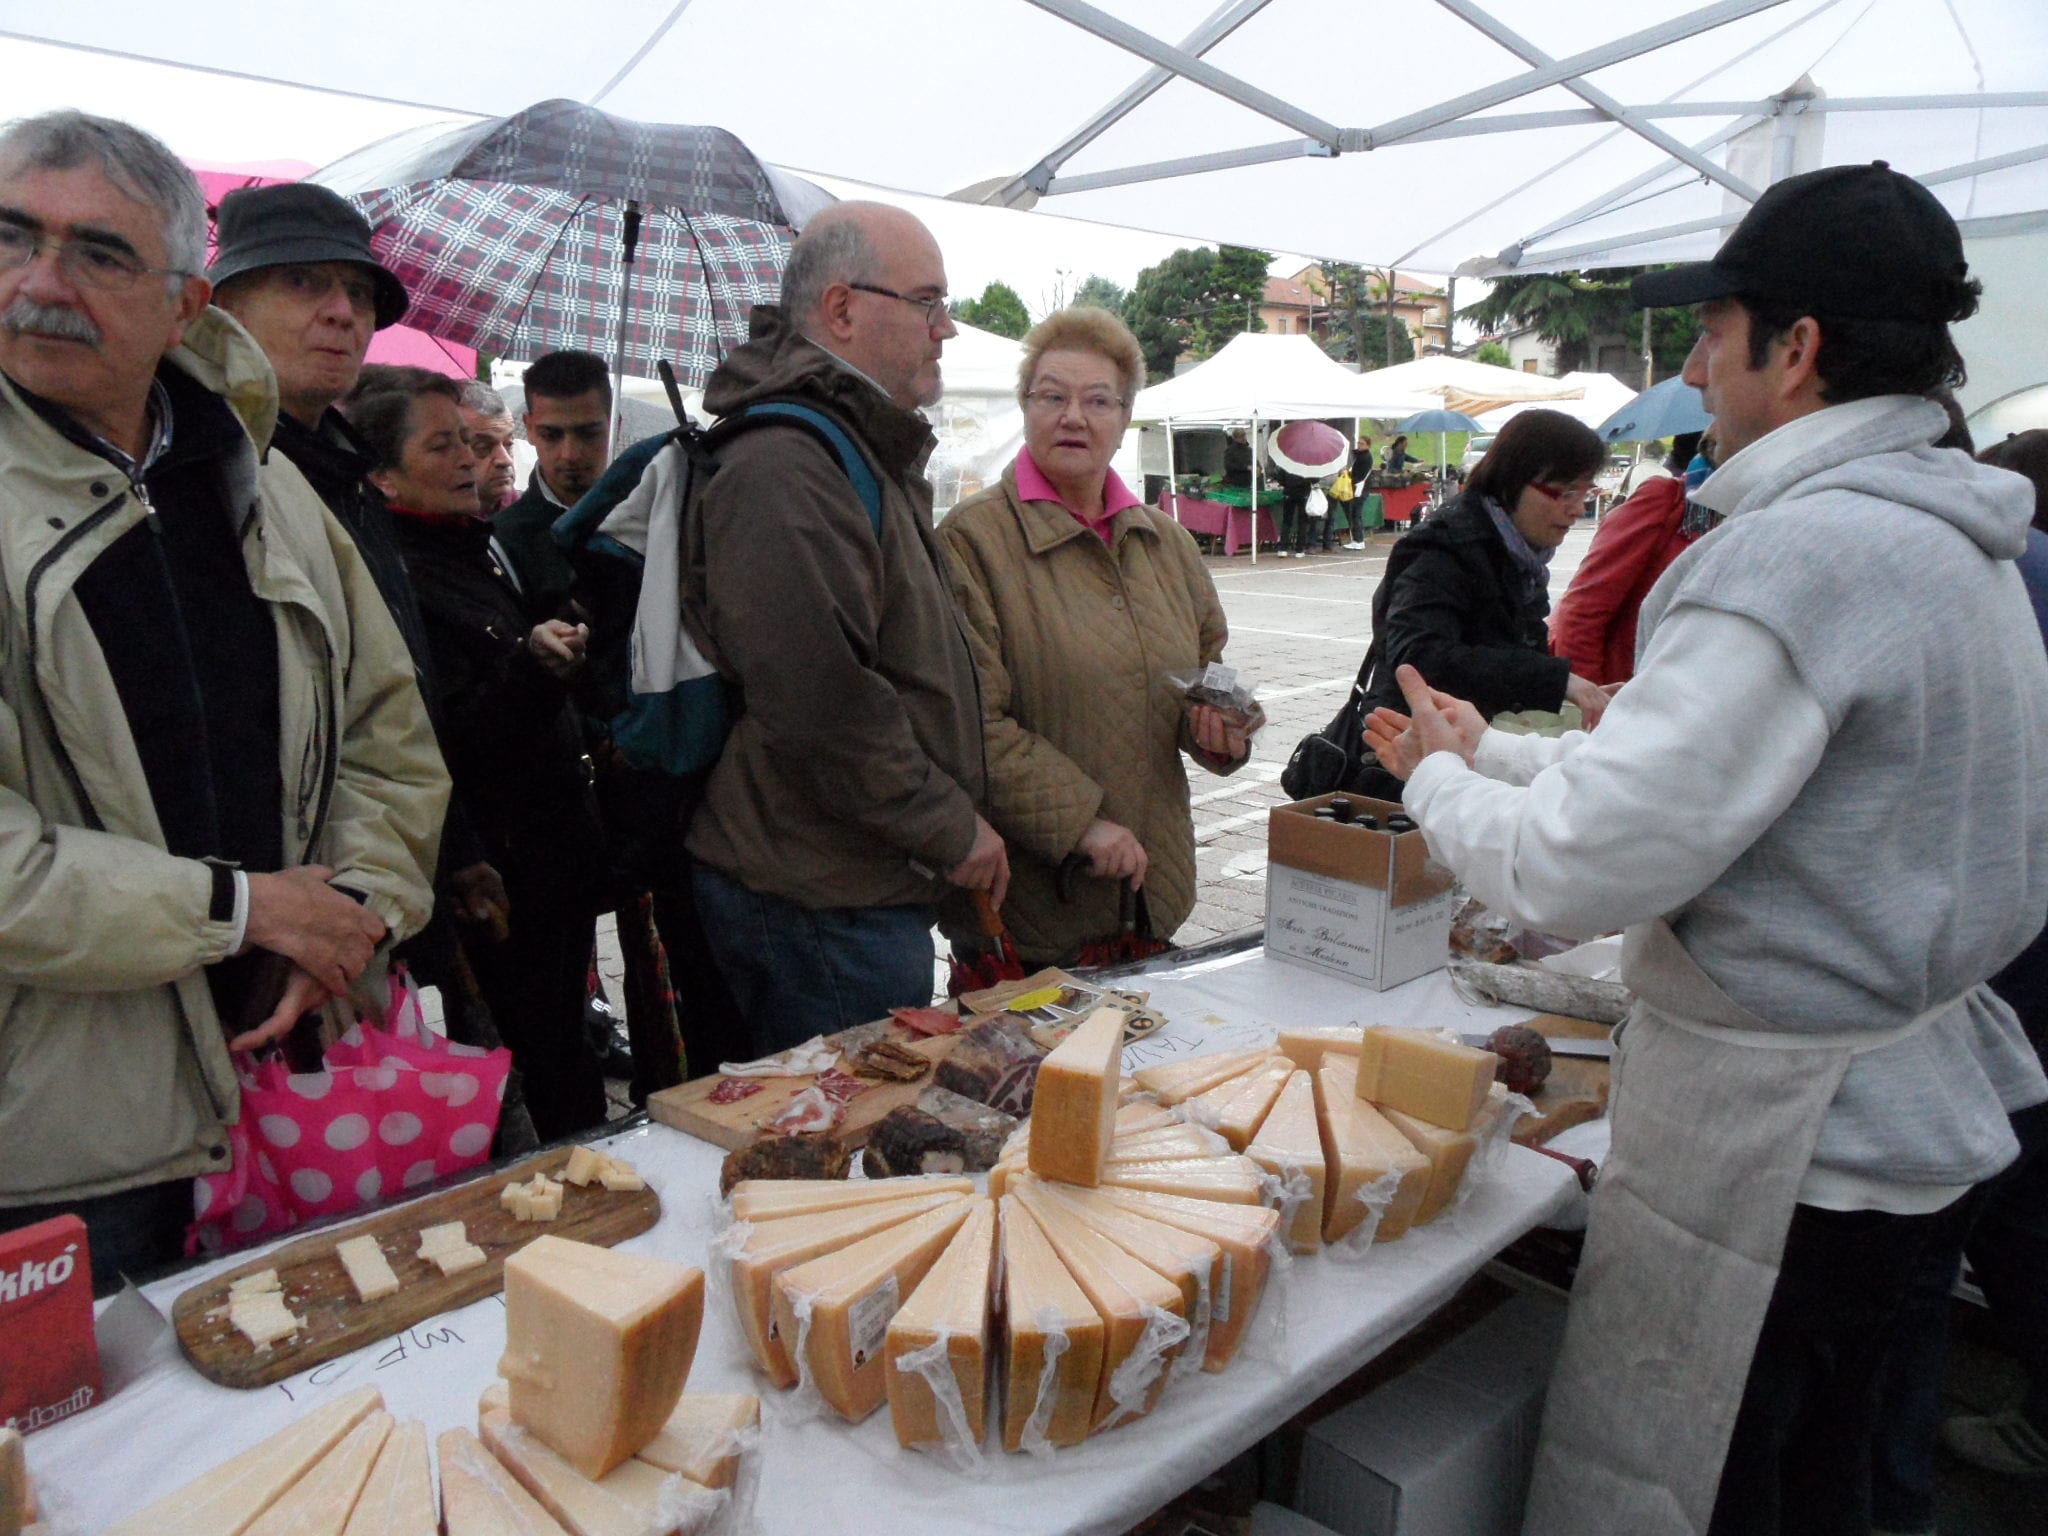 Saronnesi golosi e solidali: comprati 15 quintali di formaggio